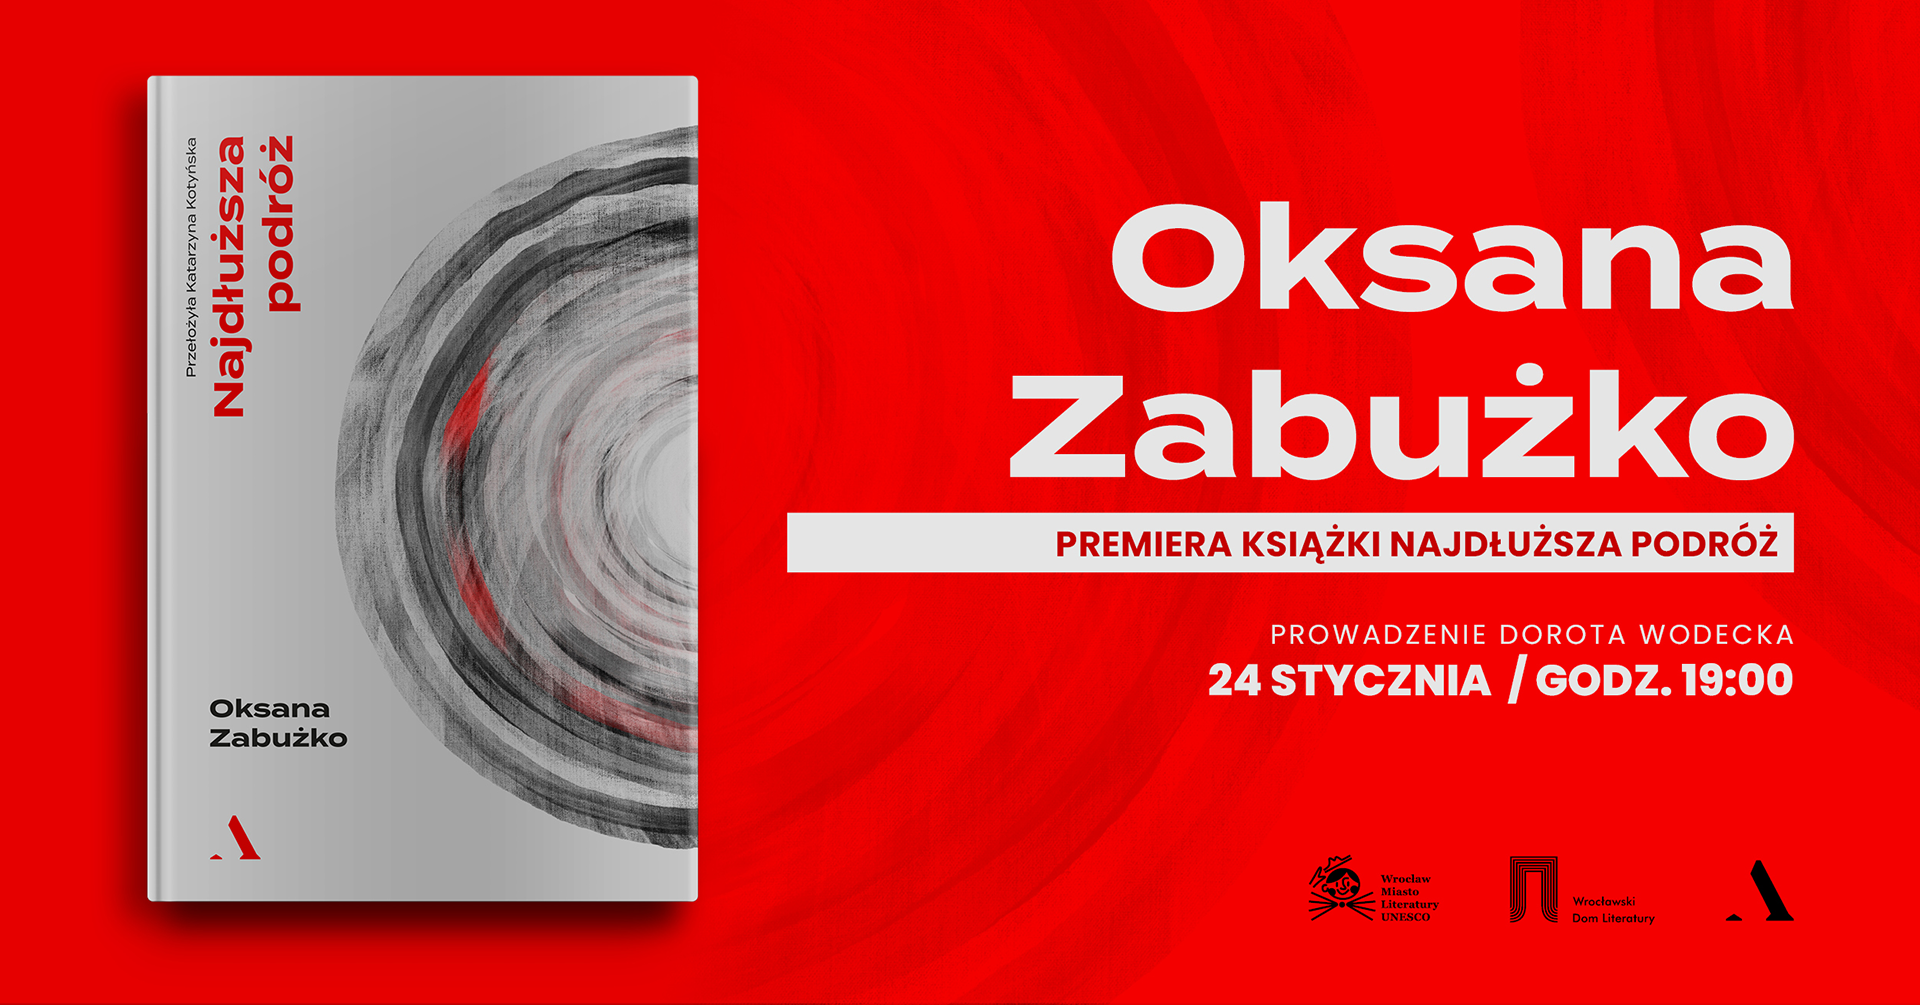 Spotkanie z Oksaną Zabużko z okazji premiery nowej książki